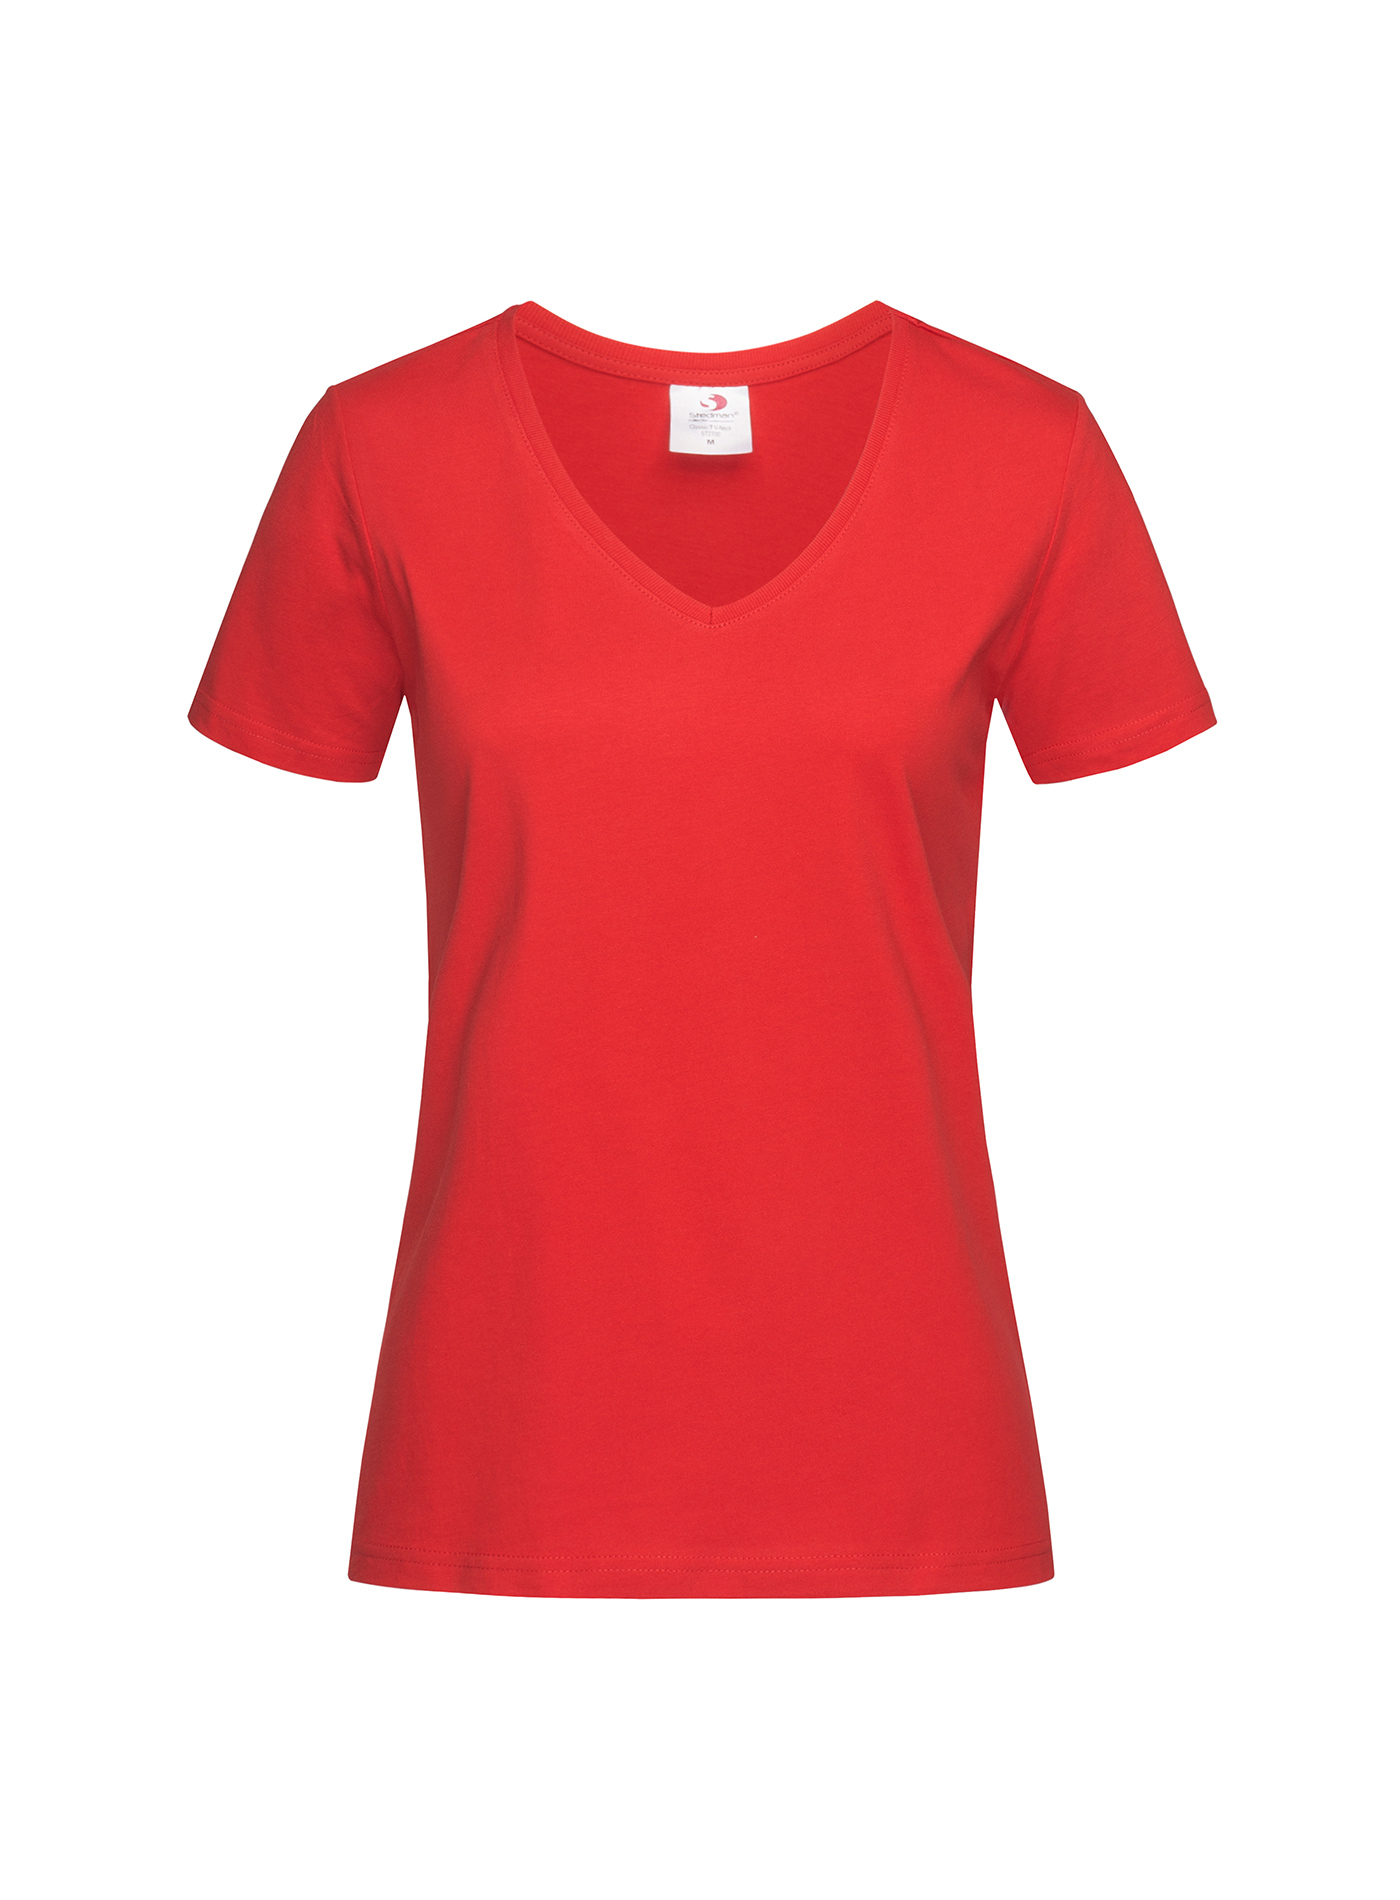 Dámské tričko s V-výstřihem Stedman - Červená XL